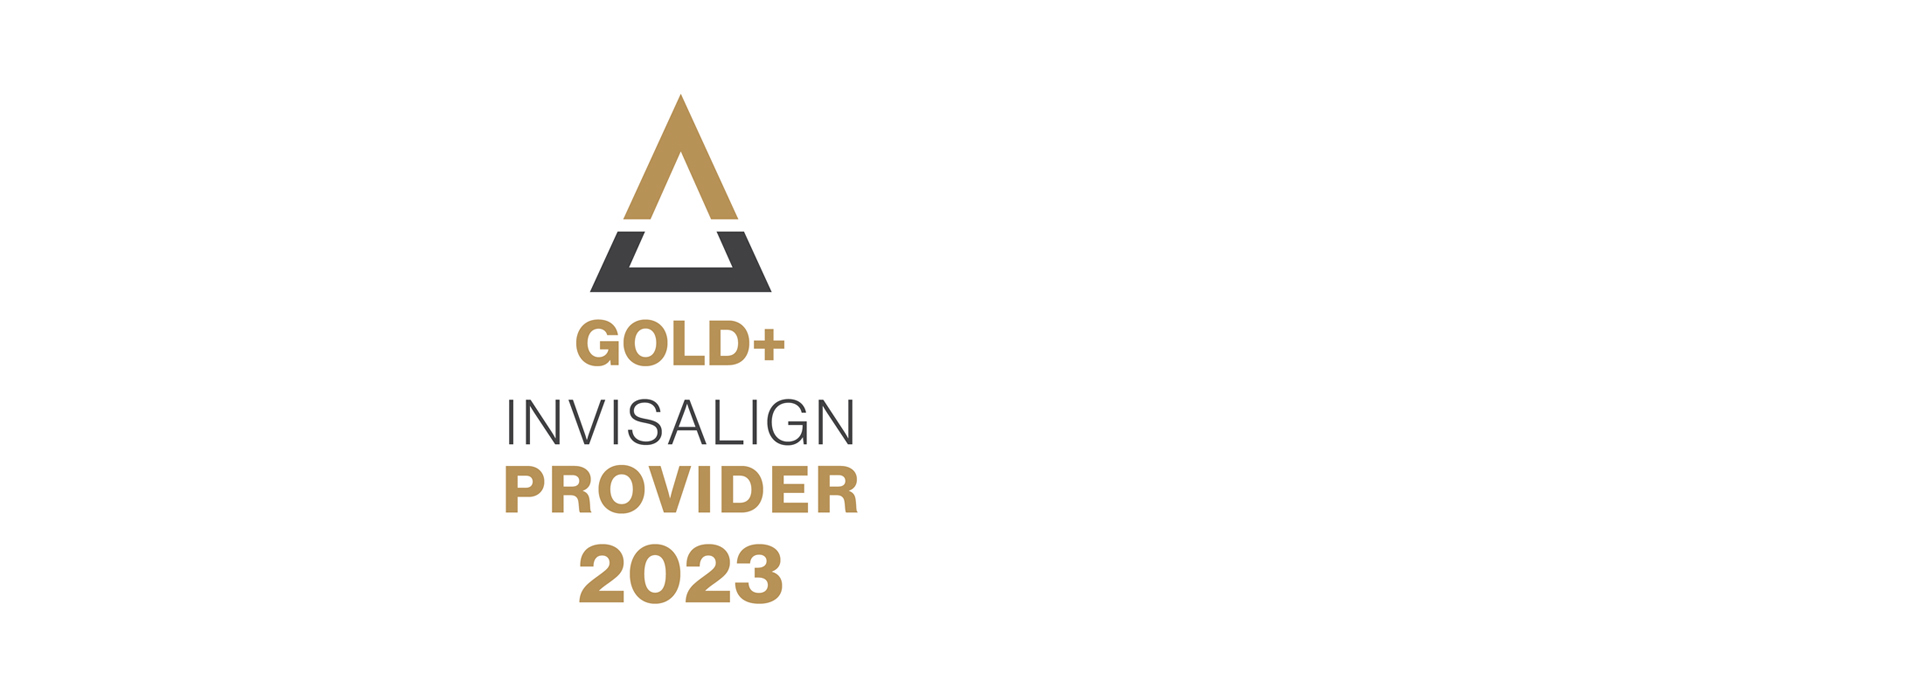 Gold+ Invisalign Provider 2023